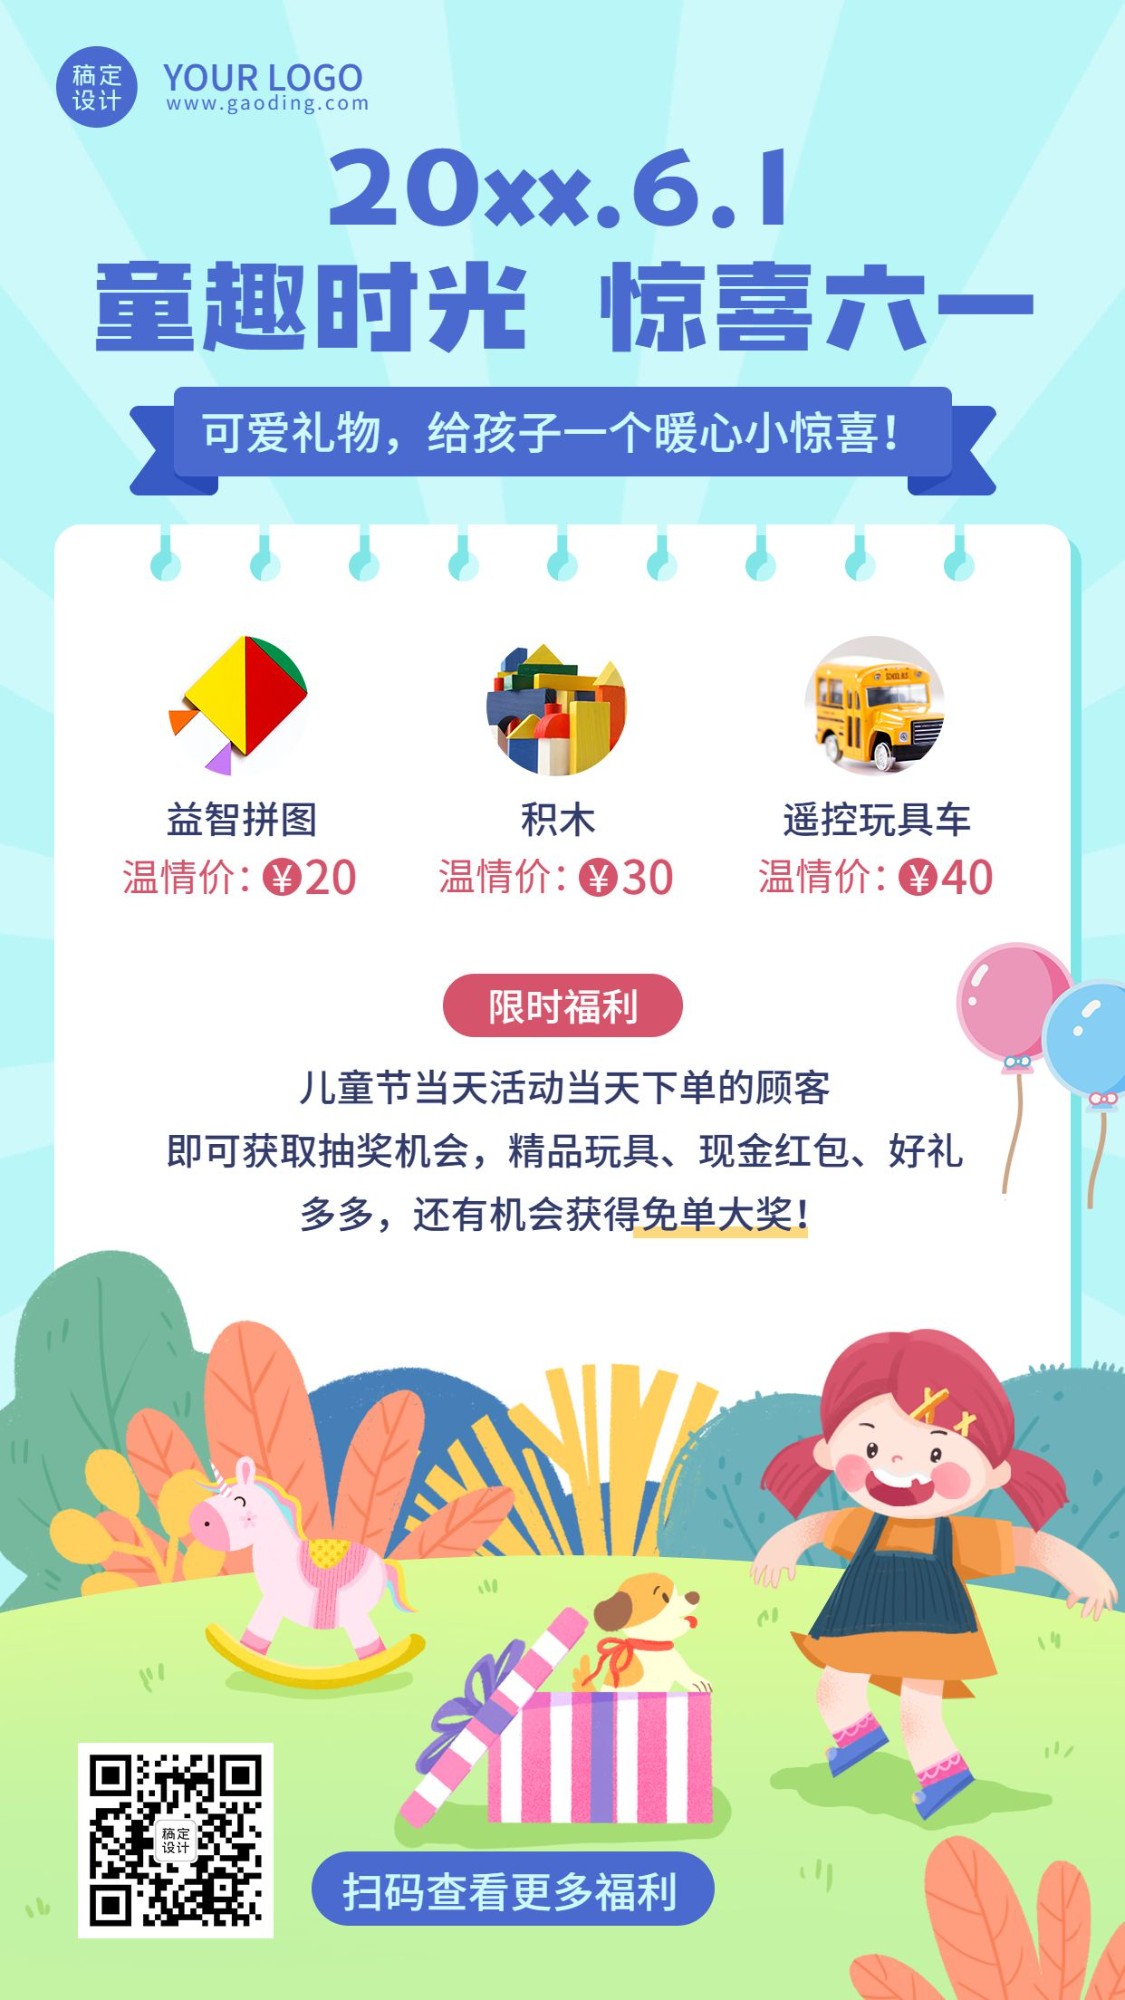 六一儿童节快乐活动促销手机海报预览效果